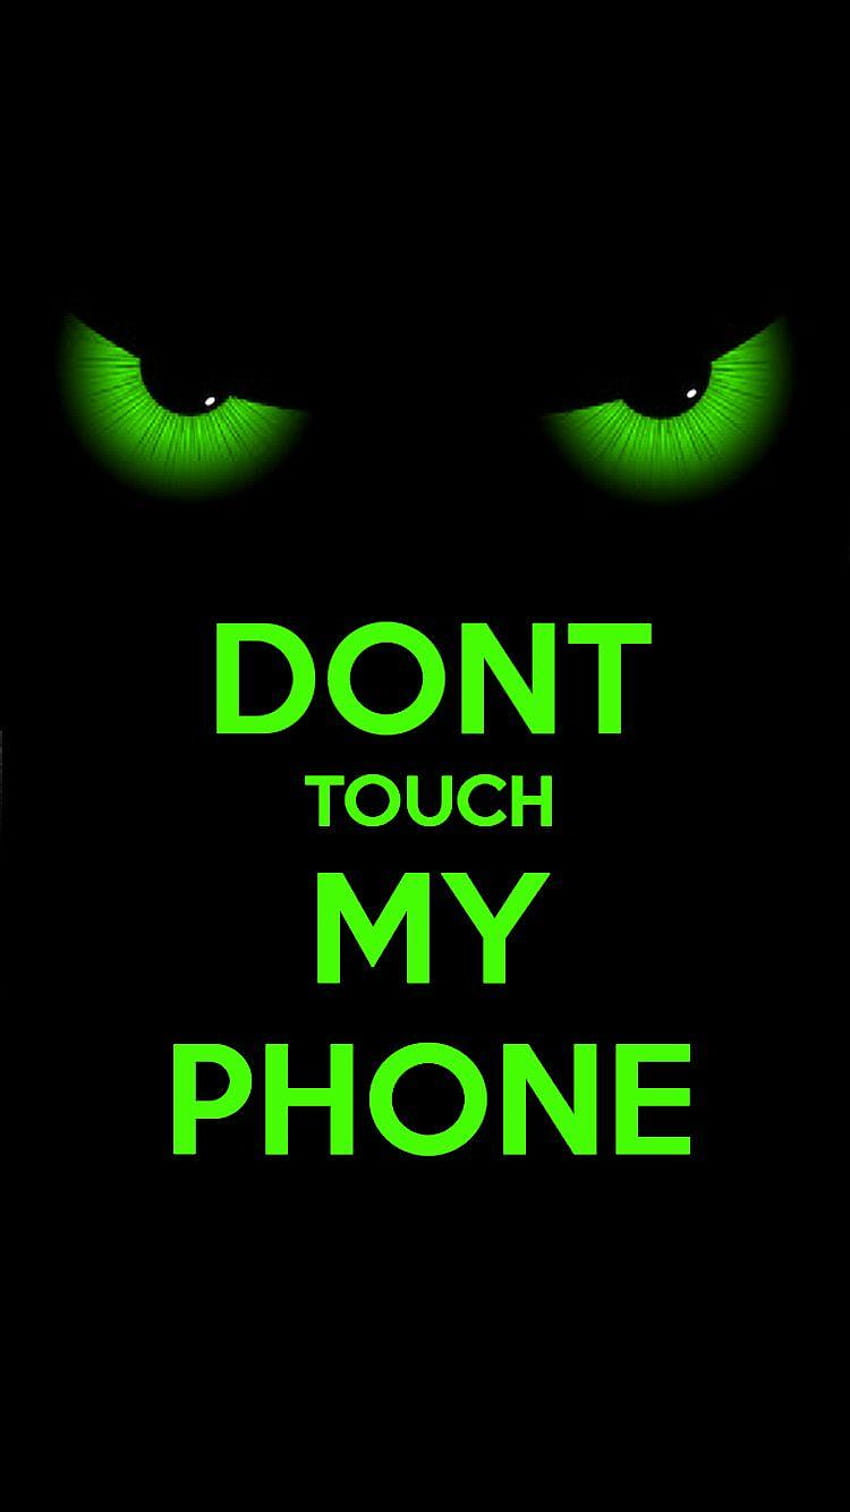 私の電話に触れないでください、触れないでください HD電話の壁紙